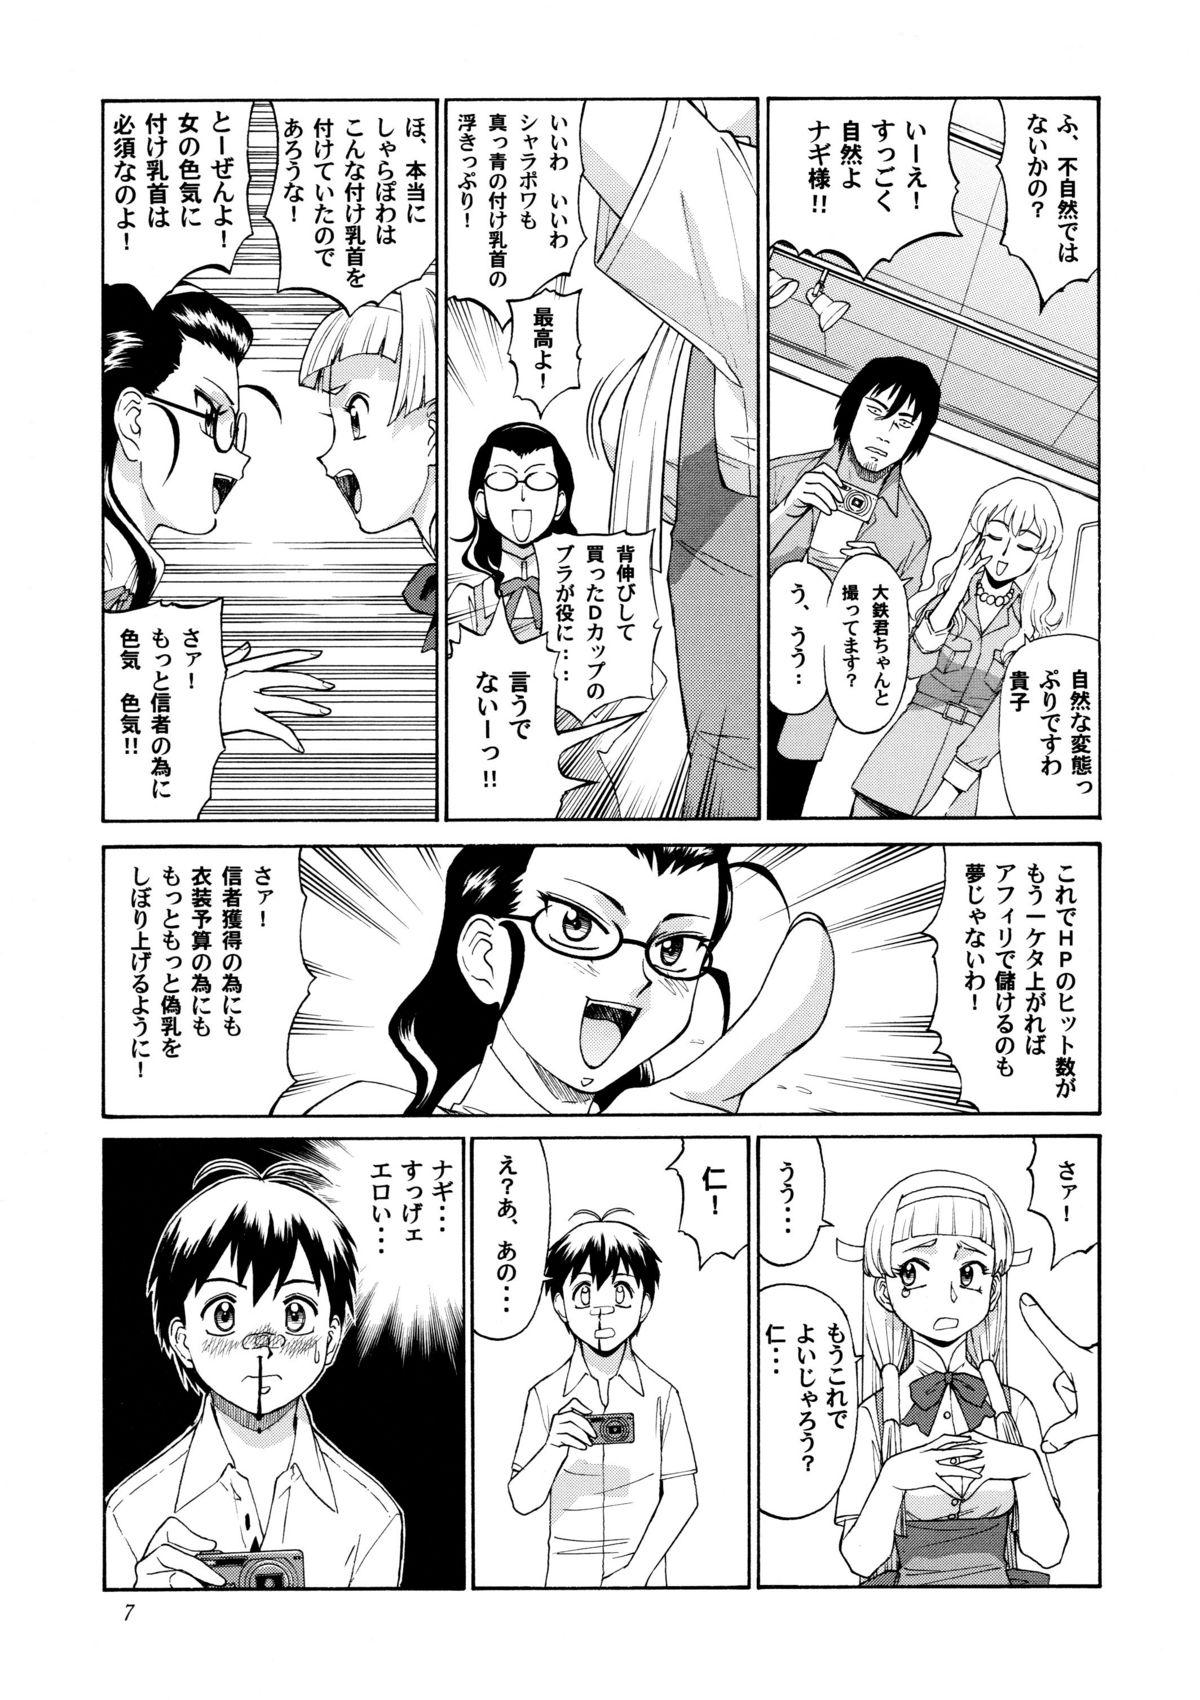 18yo Kamisama Megaton Punch 11 - Urusei yatsura Kannagi Utawarerumono Kamichu Wagaya no oinari sama Gonzo - Page 6